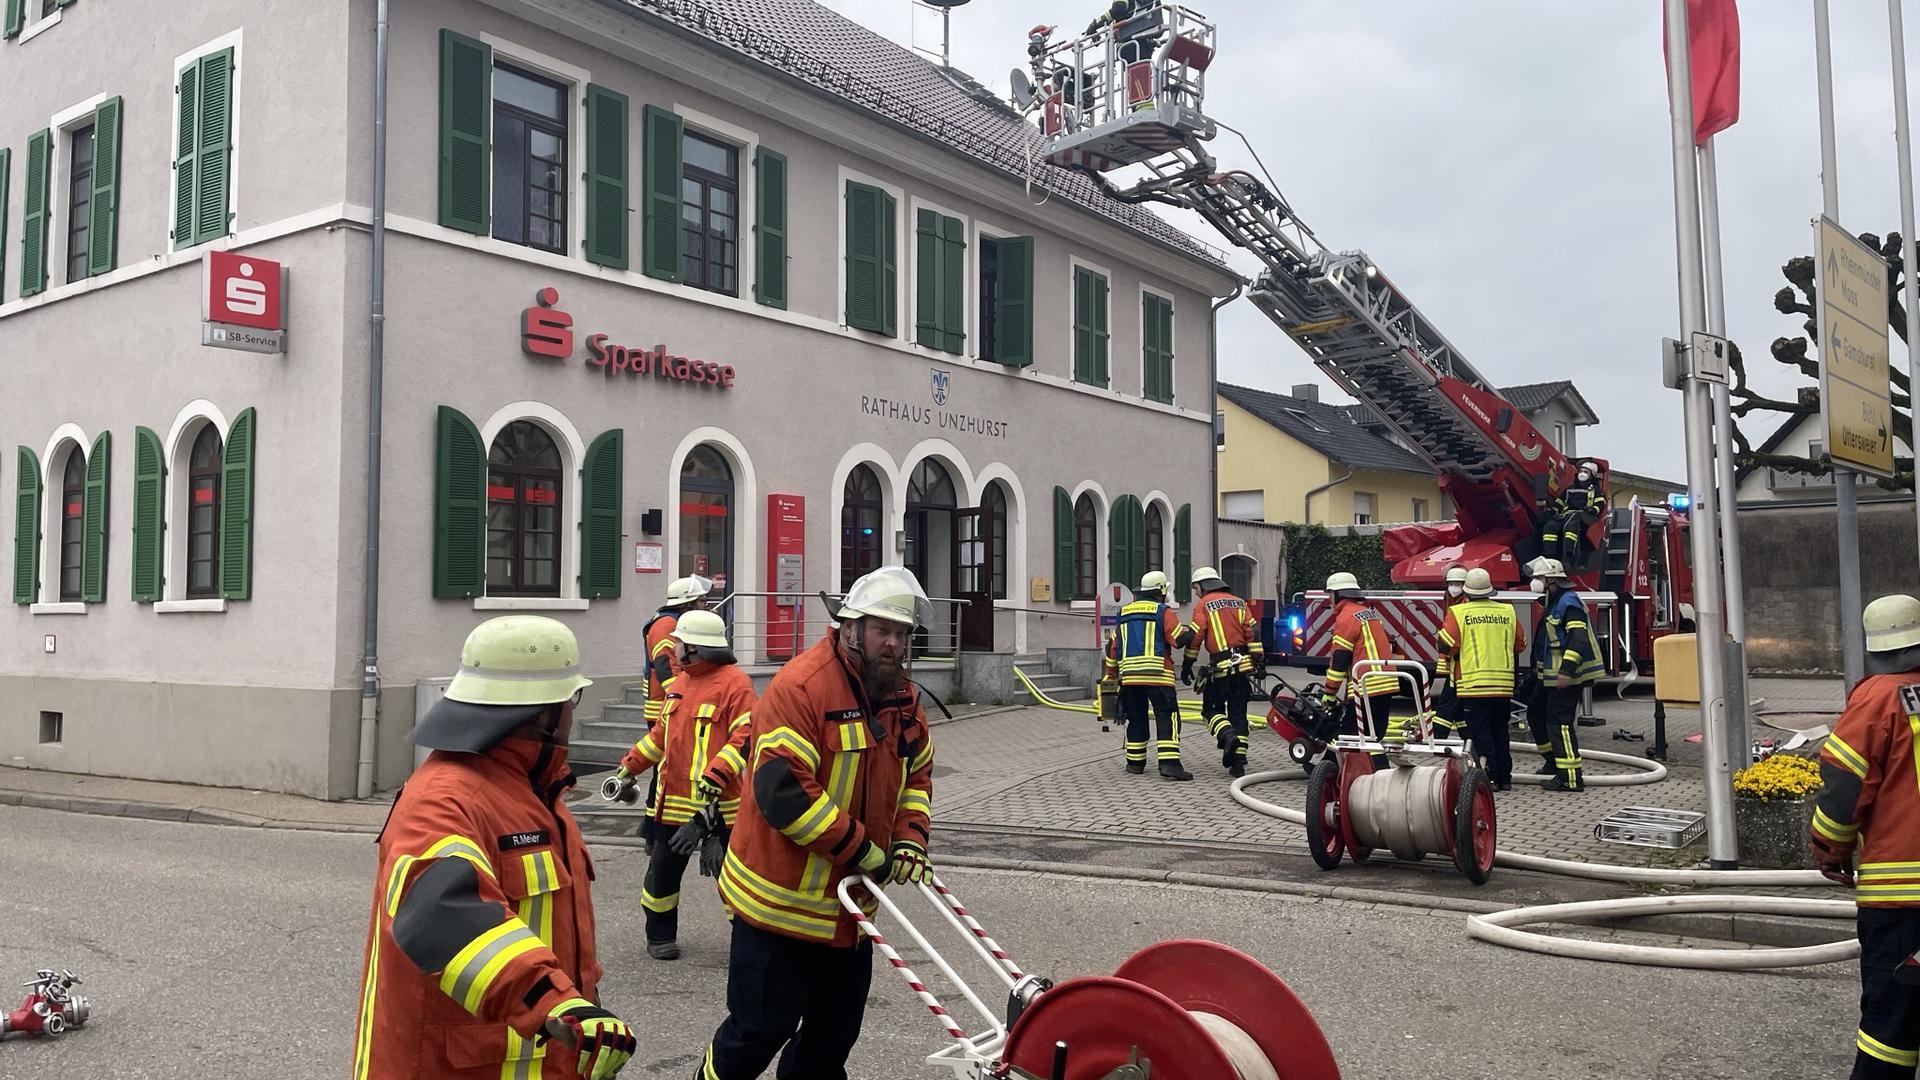 Im alten Rathaus in Ottersweier-Unzhurst ist am Mittwoch gegen 8.30 Uhr ein Brand ausgebrochen. 